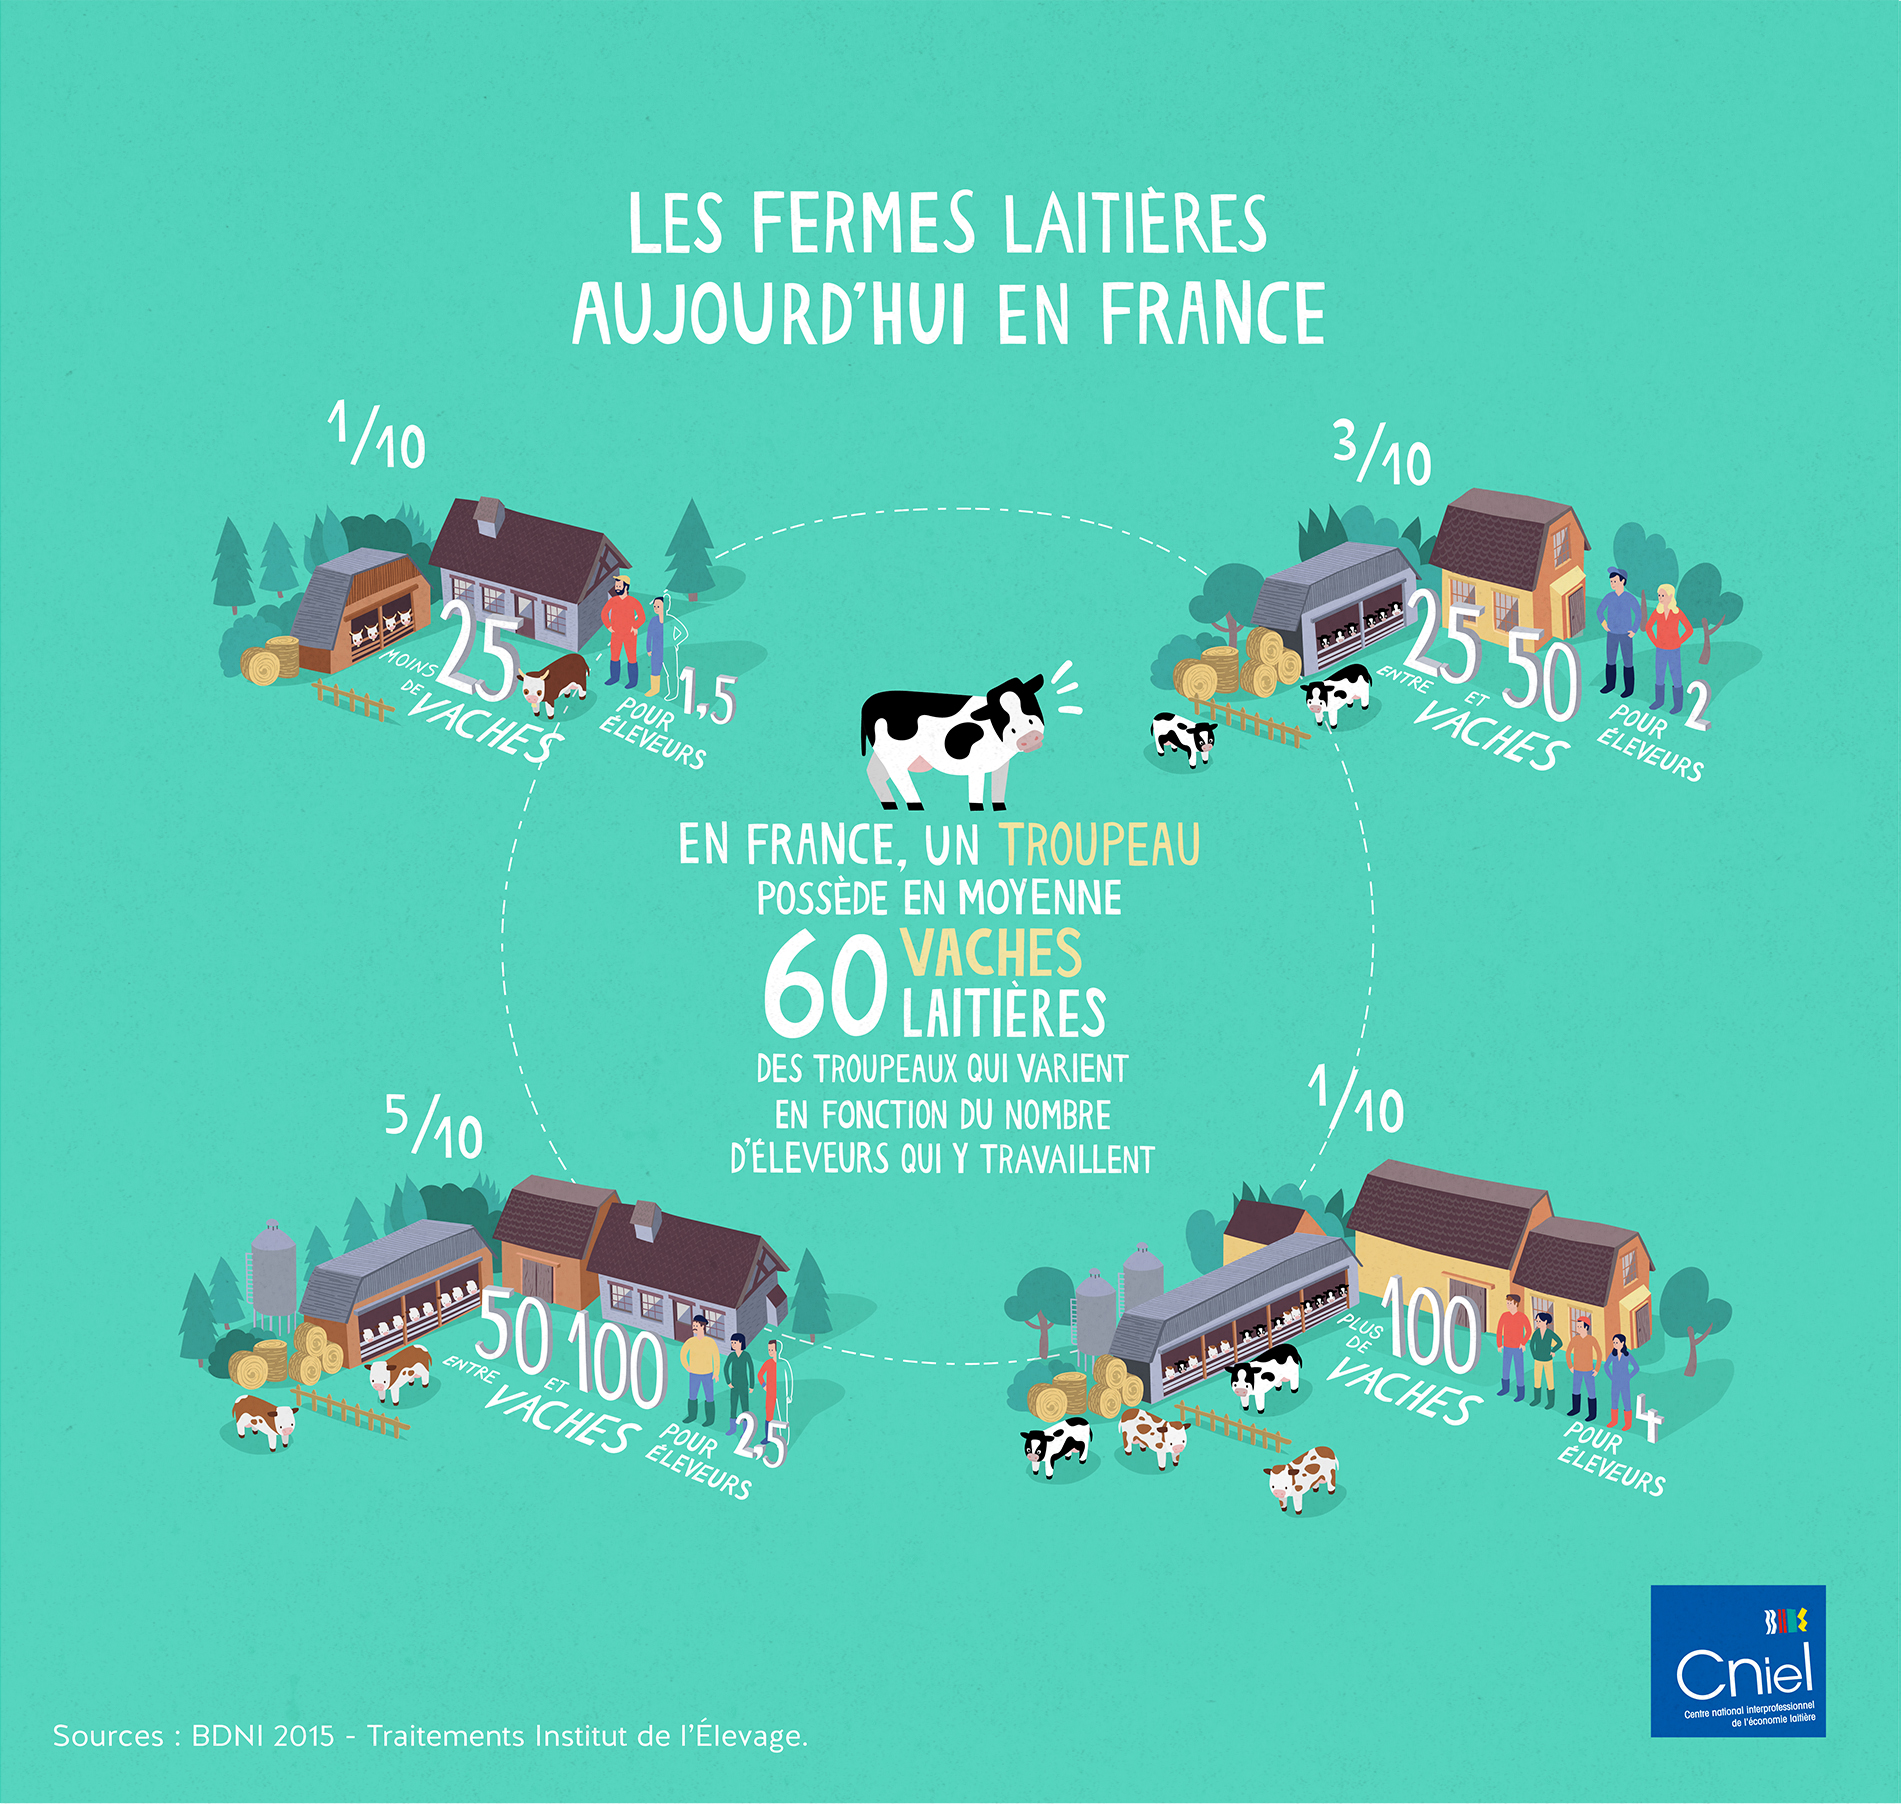 Les fermes laitières aujourd'hui en France